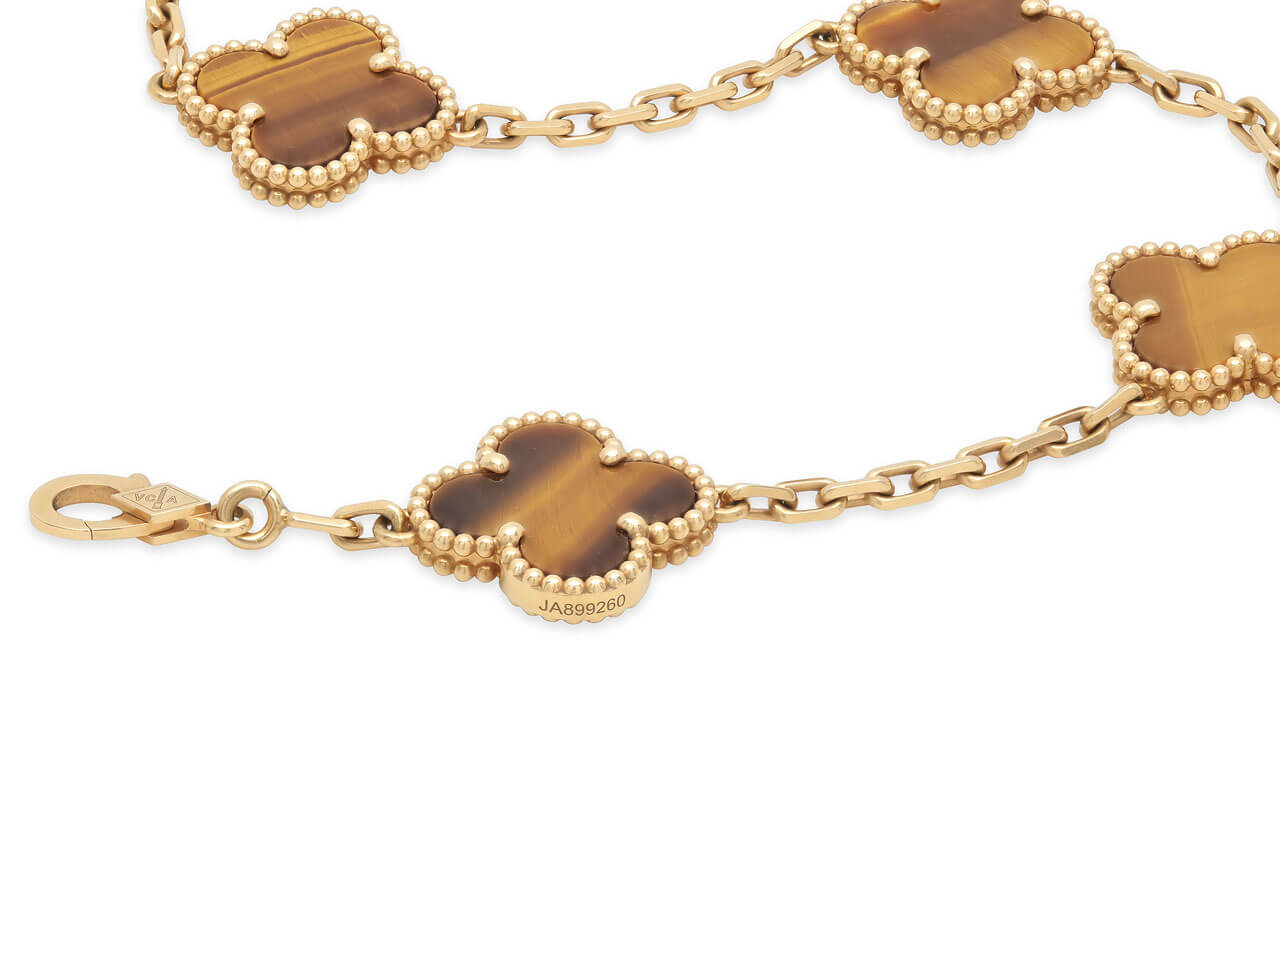 Van Cleef & Arpels 'Vintage Alhambra' 5 Motif Tiger's Eye Bracelet in 18K Gold